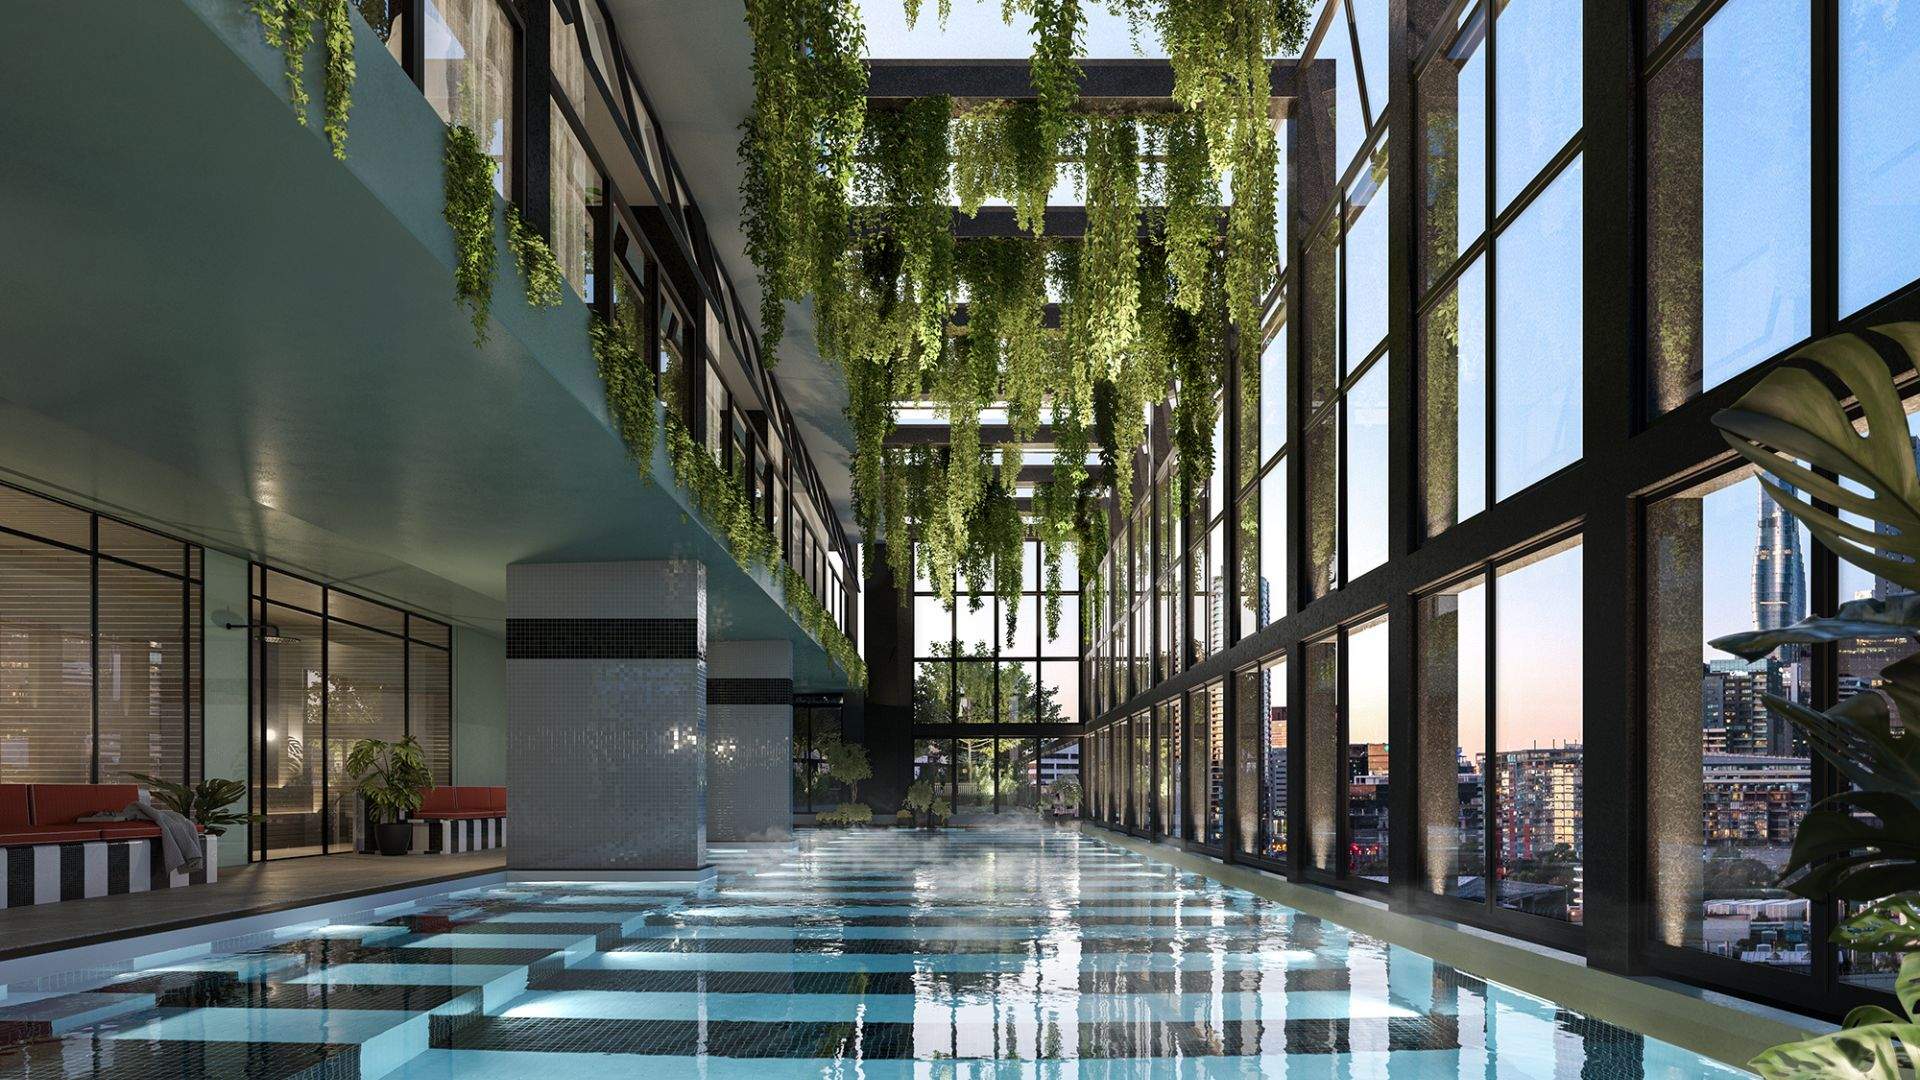 Hannah Street Hotel renders opening in 2025, Southbank